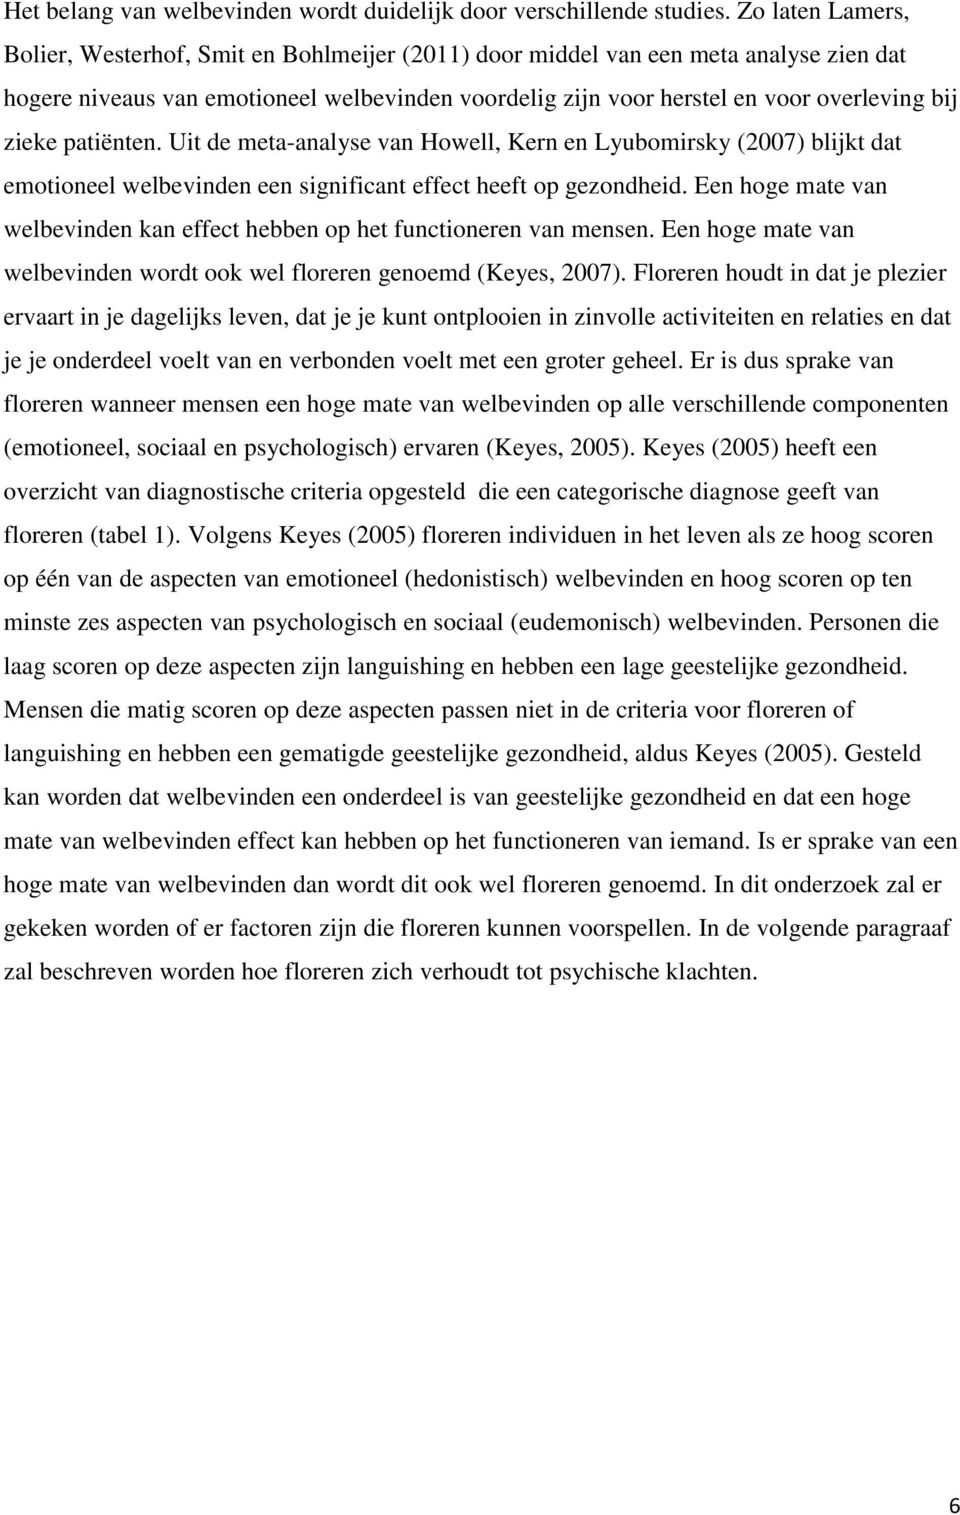 zieke patiënten. Uit de meta-analyse van Howell, Kern en Lyubomirsky (2007) blijkt dat emotioneel welbevinden een significant effect heeft op gezondheid.